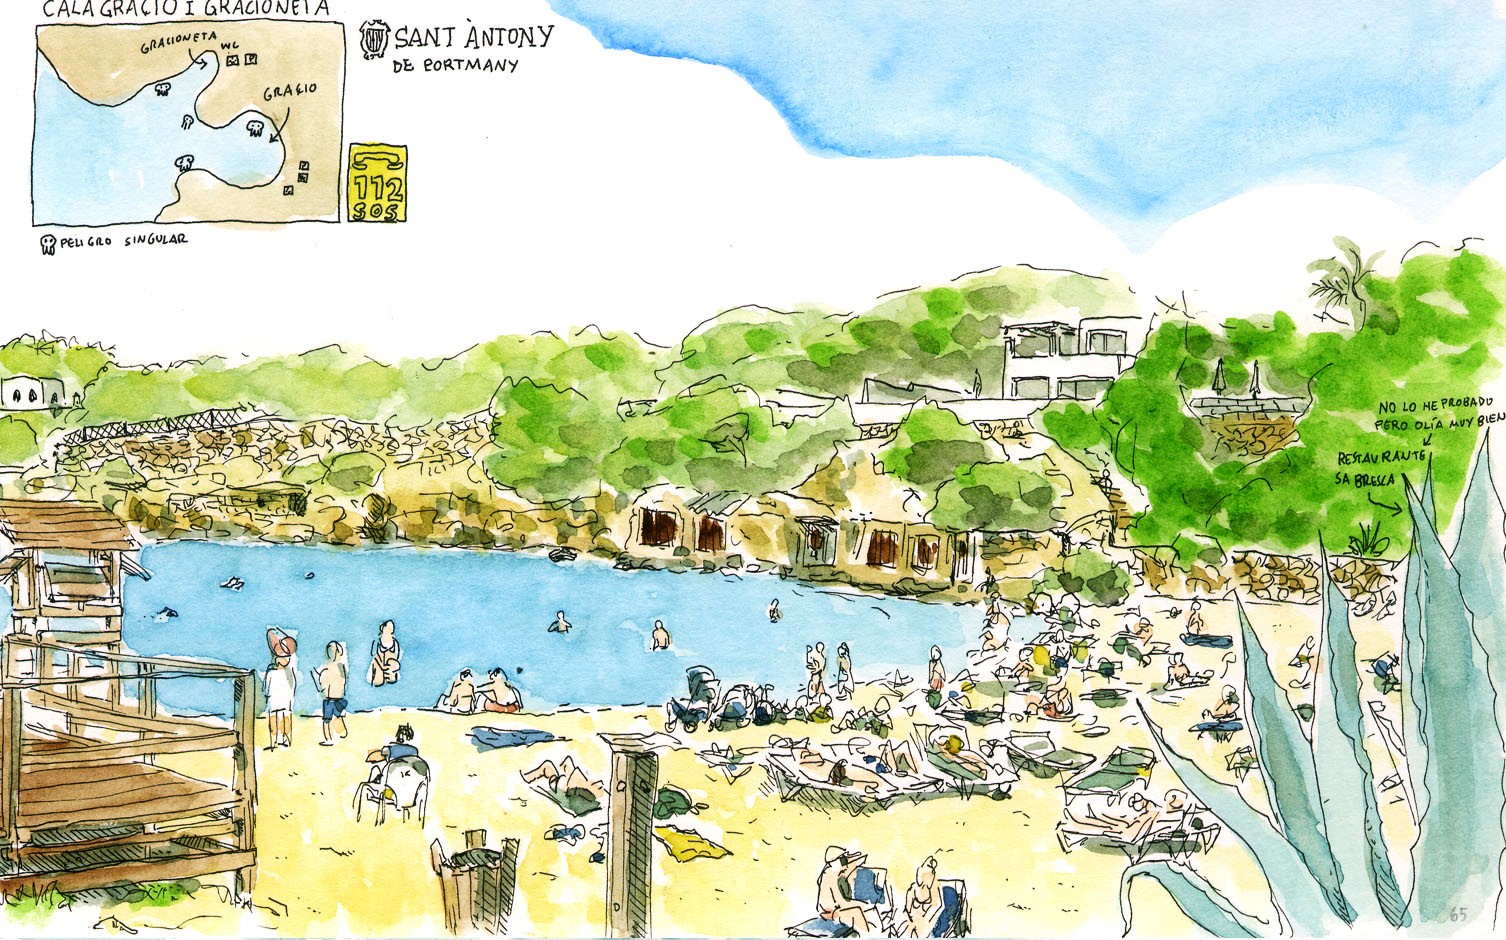 Ilustración de la playa de Sant Antoni Cala Gracioneta en la isla de Ibiza, Baleares, España